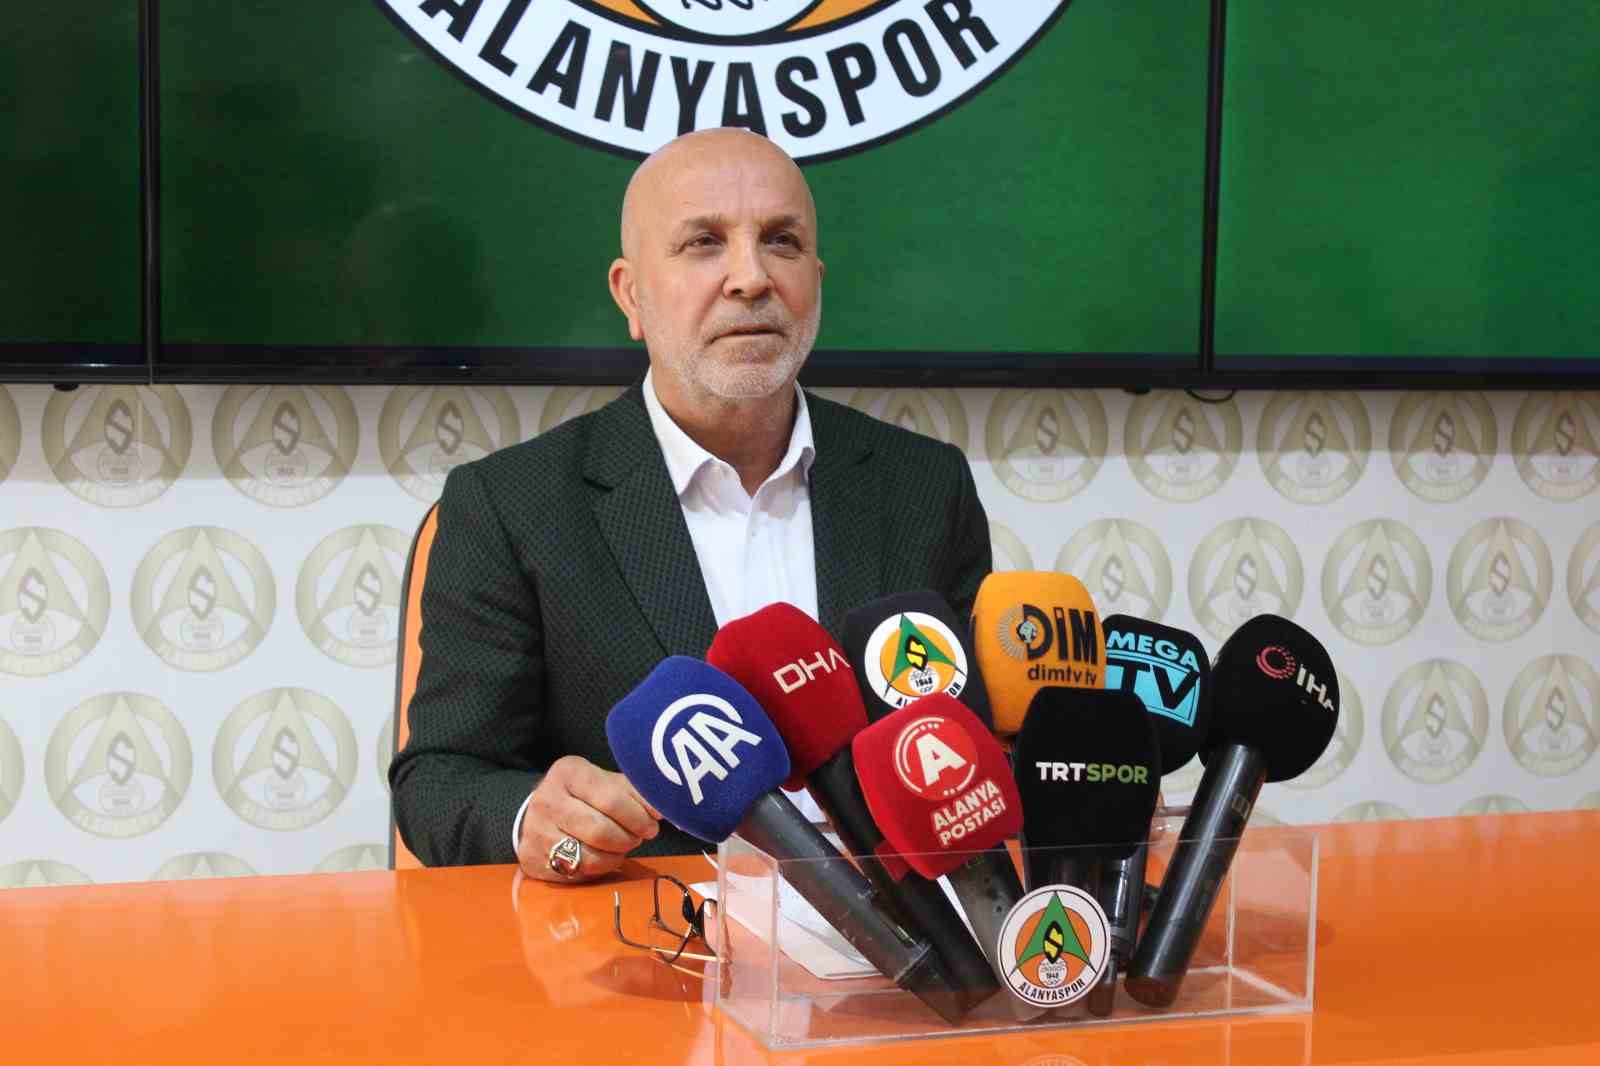 Alanyaspor Başkanı Çavuşoğlu: “Hiçbir zaman siyaseti kulübü de spora da karıştırmadım”
